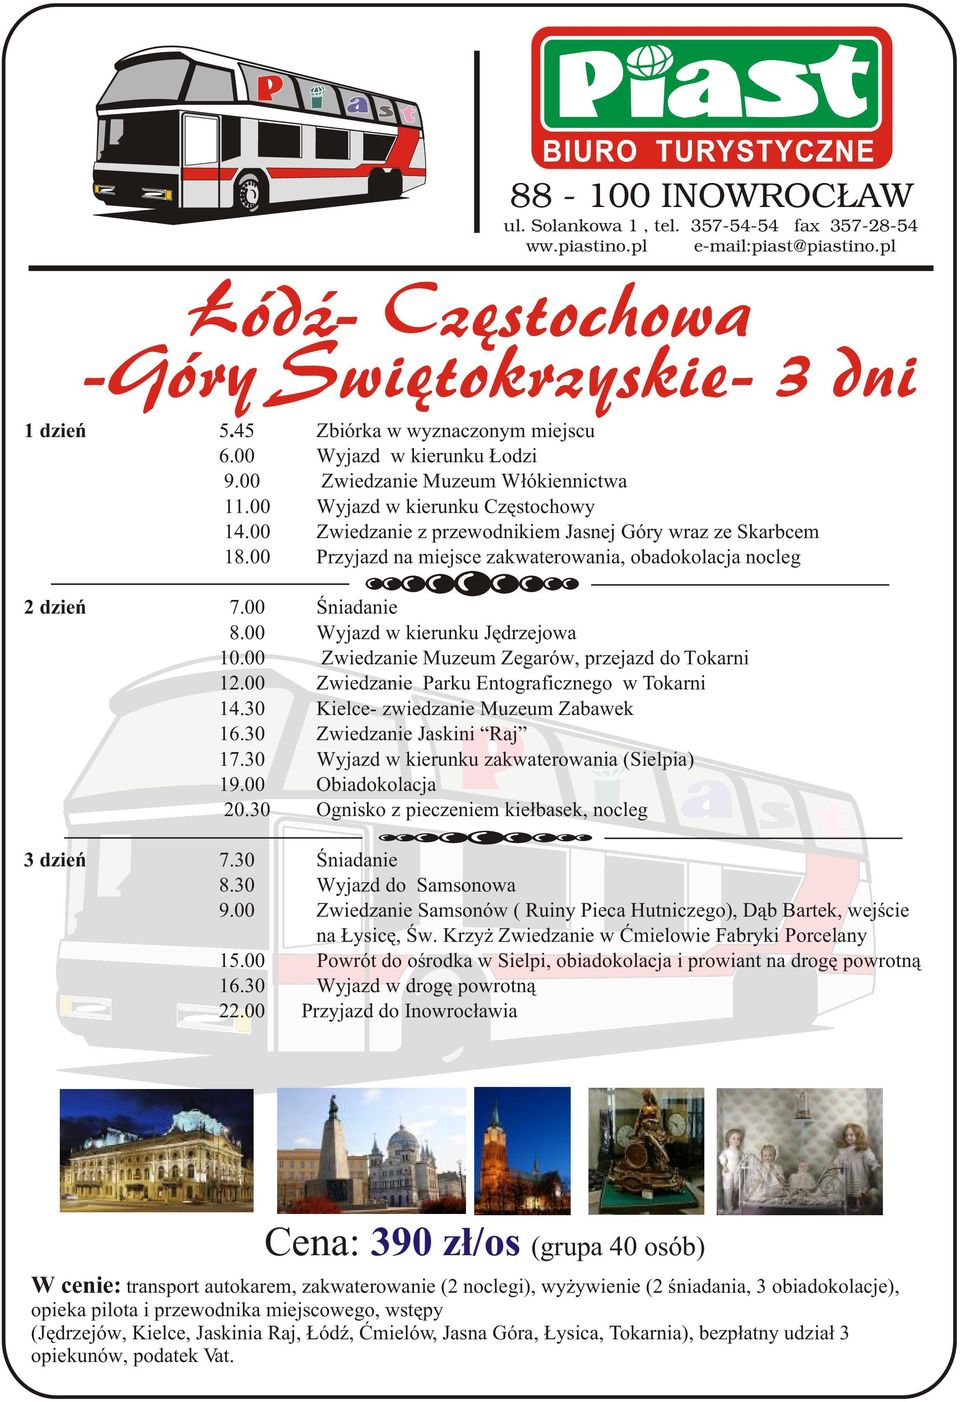 00 Wyjazd w kierunku Jêdrzejowa 10.00 Zwiedzanie Muzeum Zegarów, przejazd do Tokarni 12.00 Zwiedzanie Parku Entograficznego w Tokarni 14.30 Kielce- zwiedzanie Muzeum Zabawek 16.